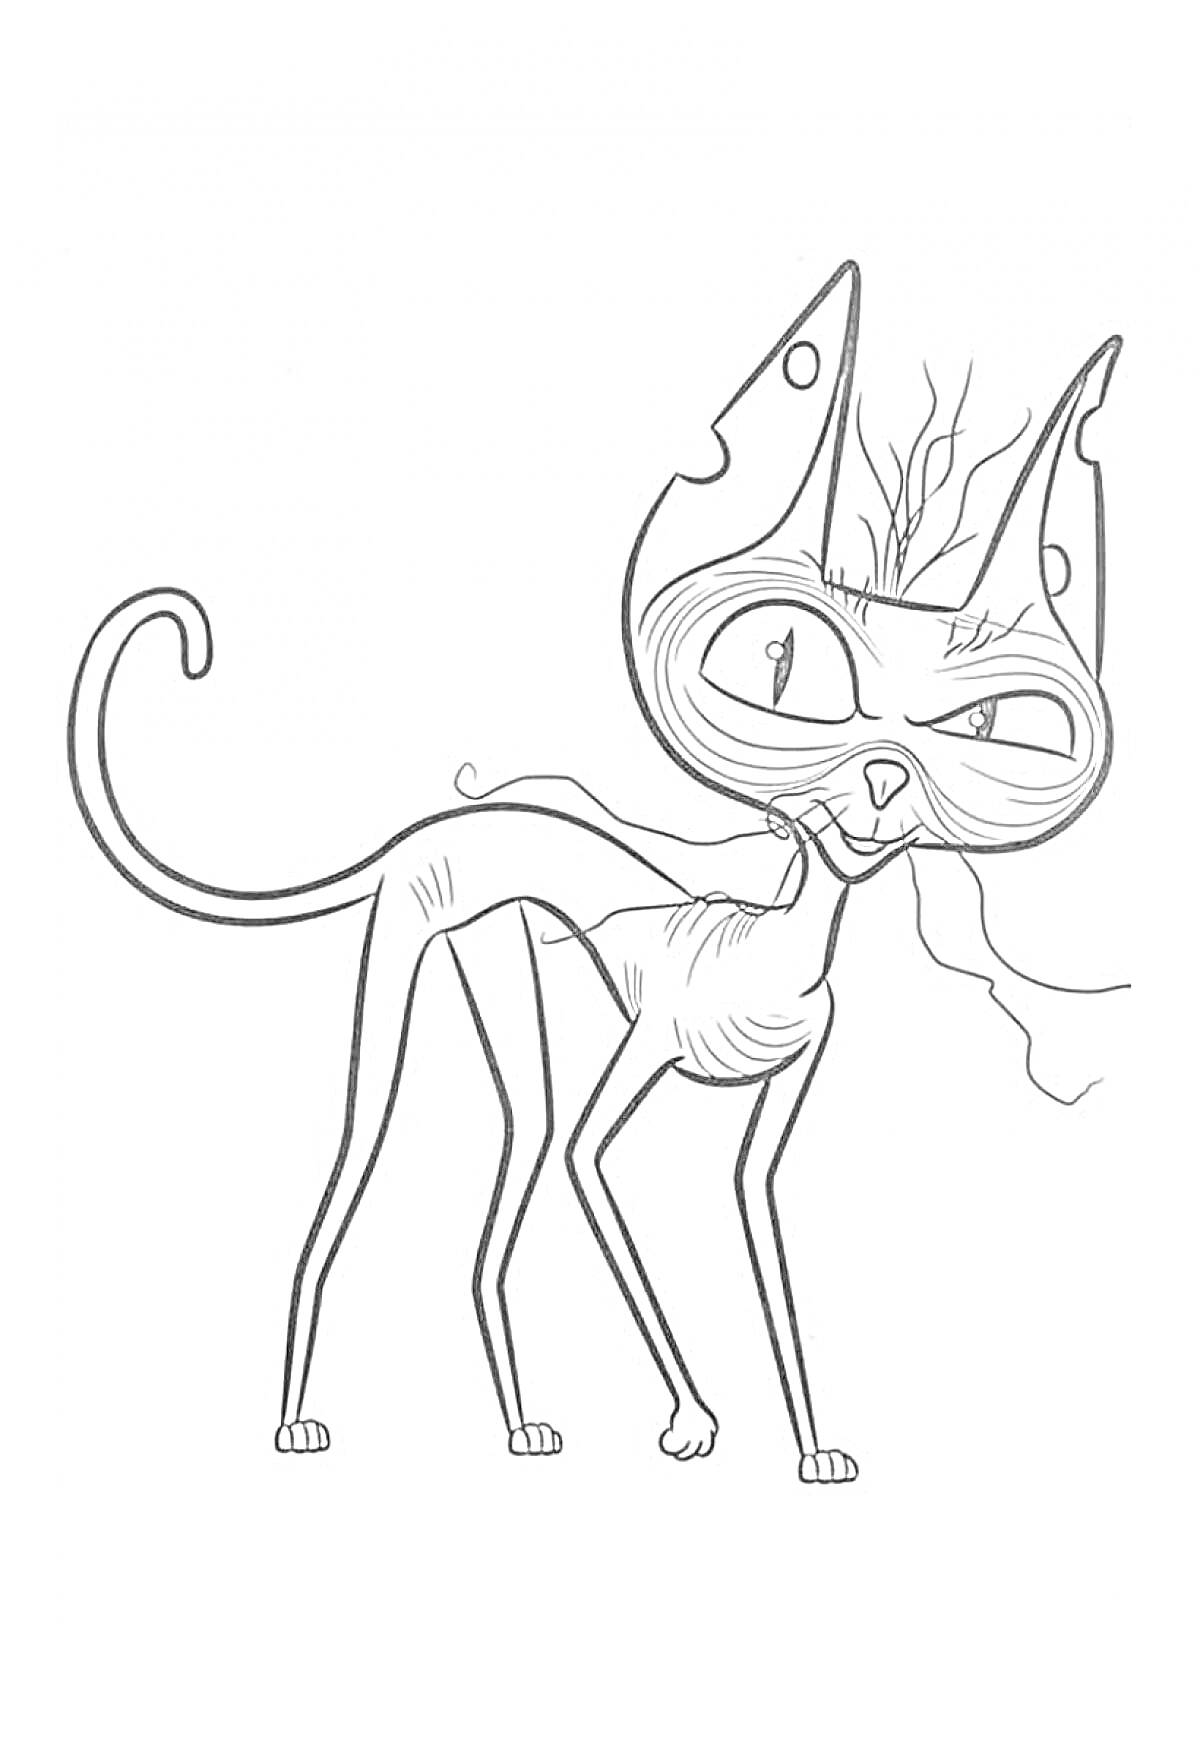 Лысый кот с длинным хвостом и большими ушами, прищуривает один глаз, держа в зубах паутину.